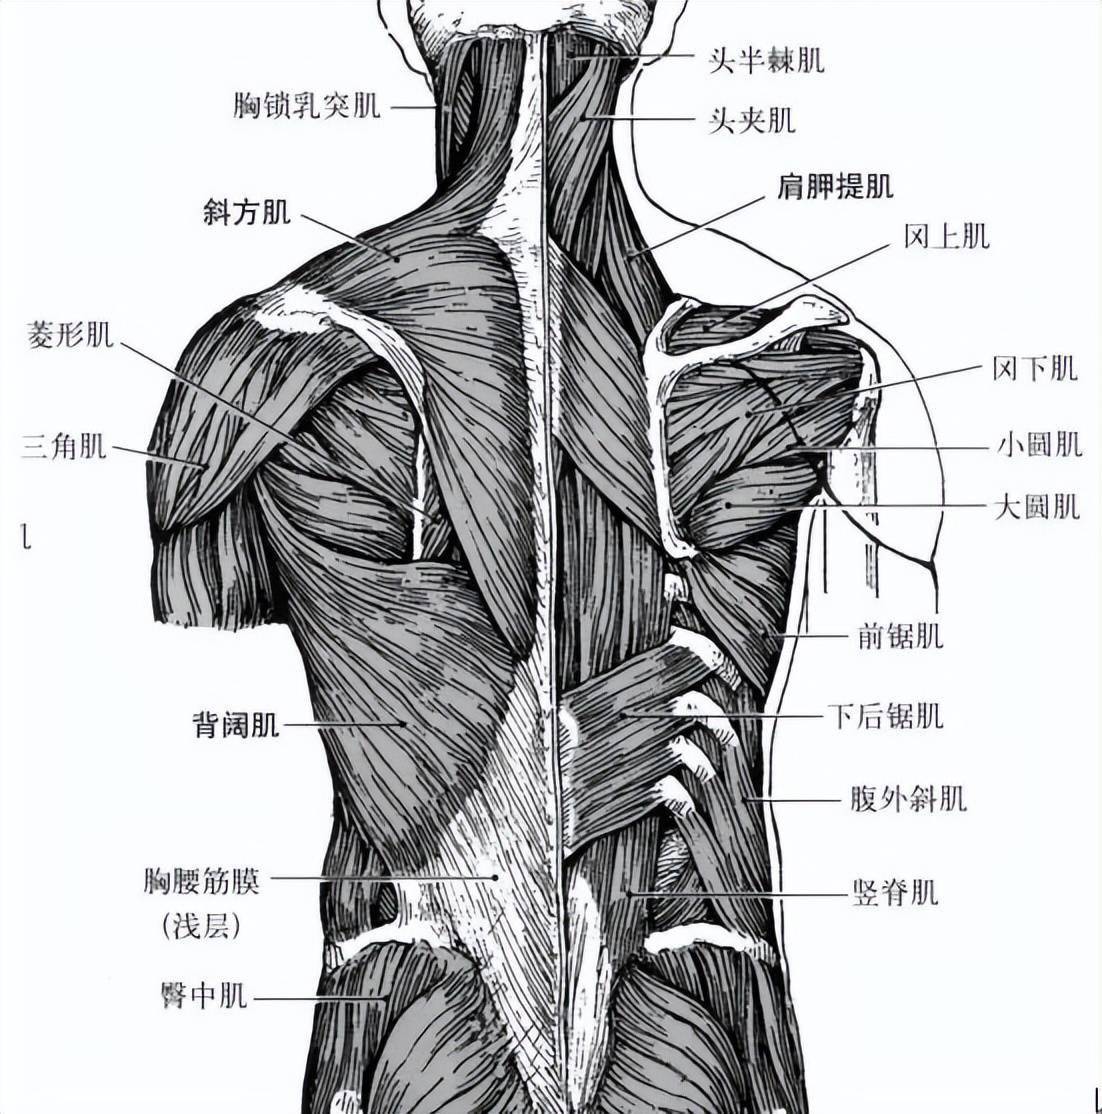 众所周知,背部肌群是人体最大的肌肉群之一,是结构和功能最复杂的肌群